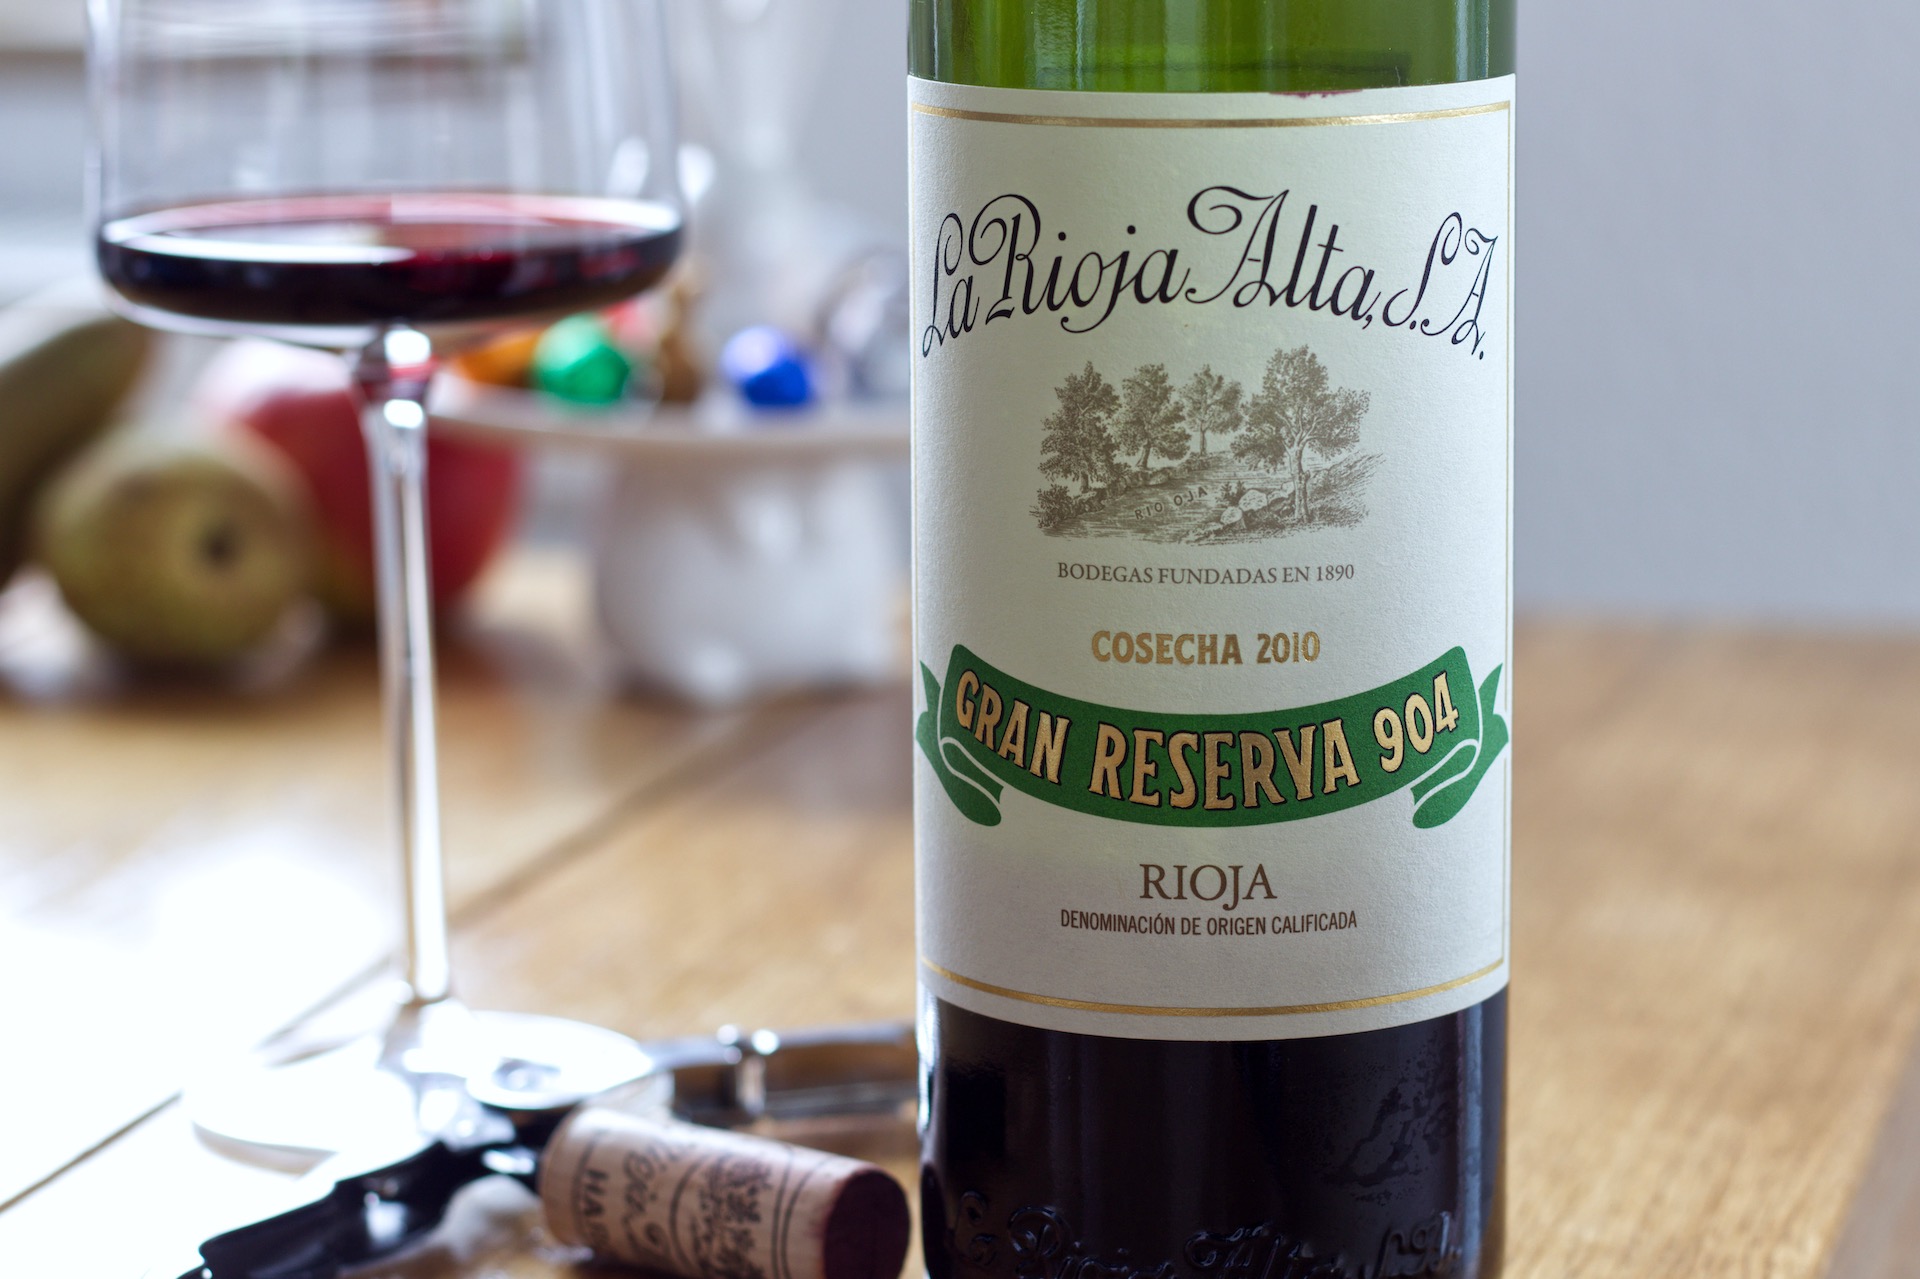 · 904 Gran Rioja - saufwein La 2010 Alta Reserva